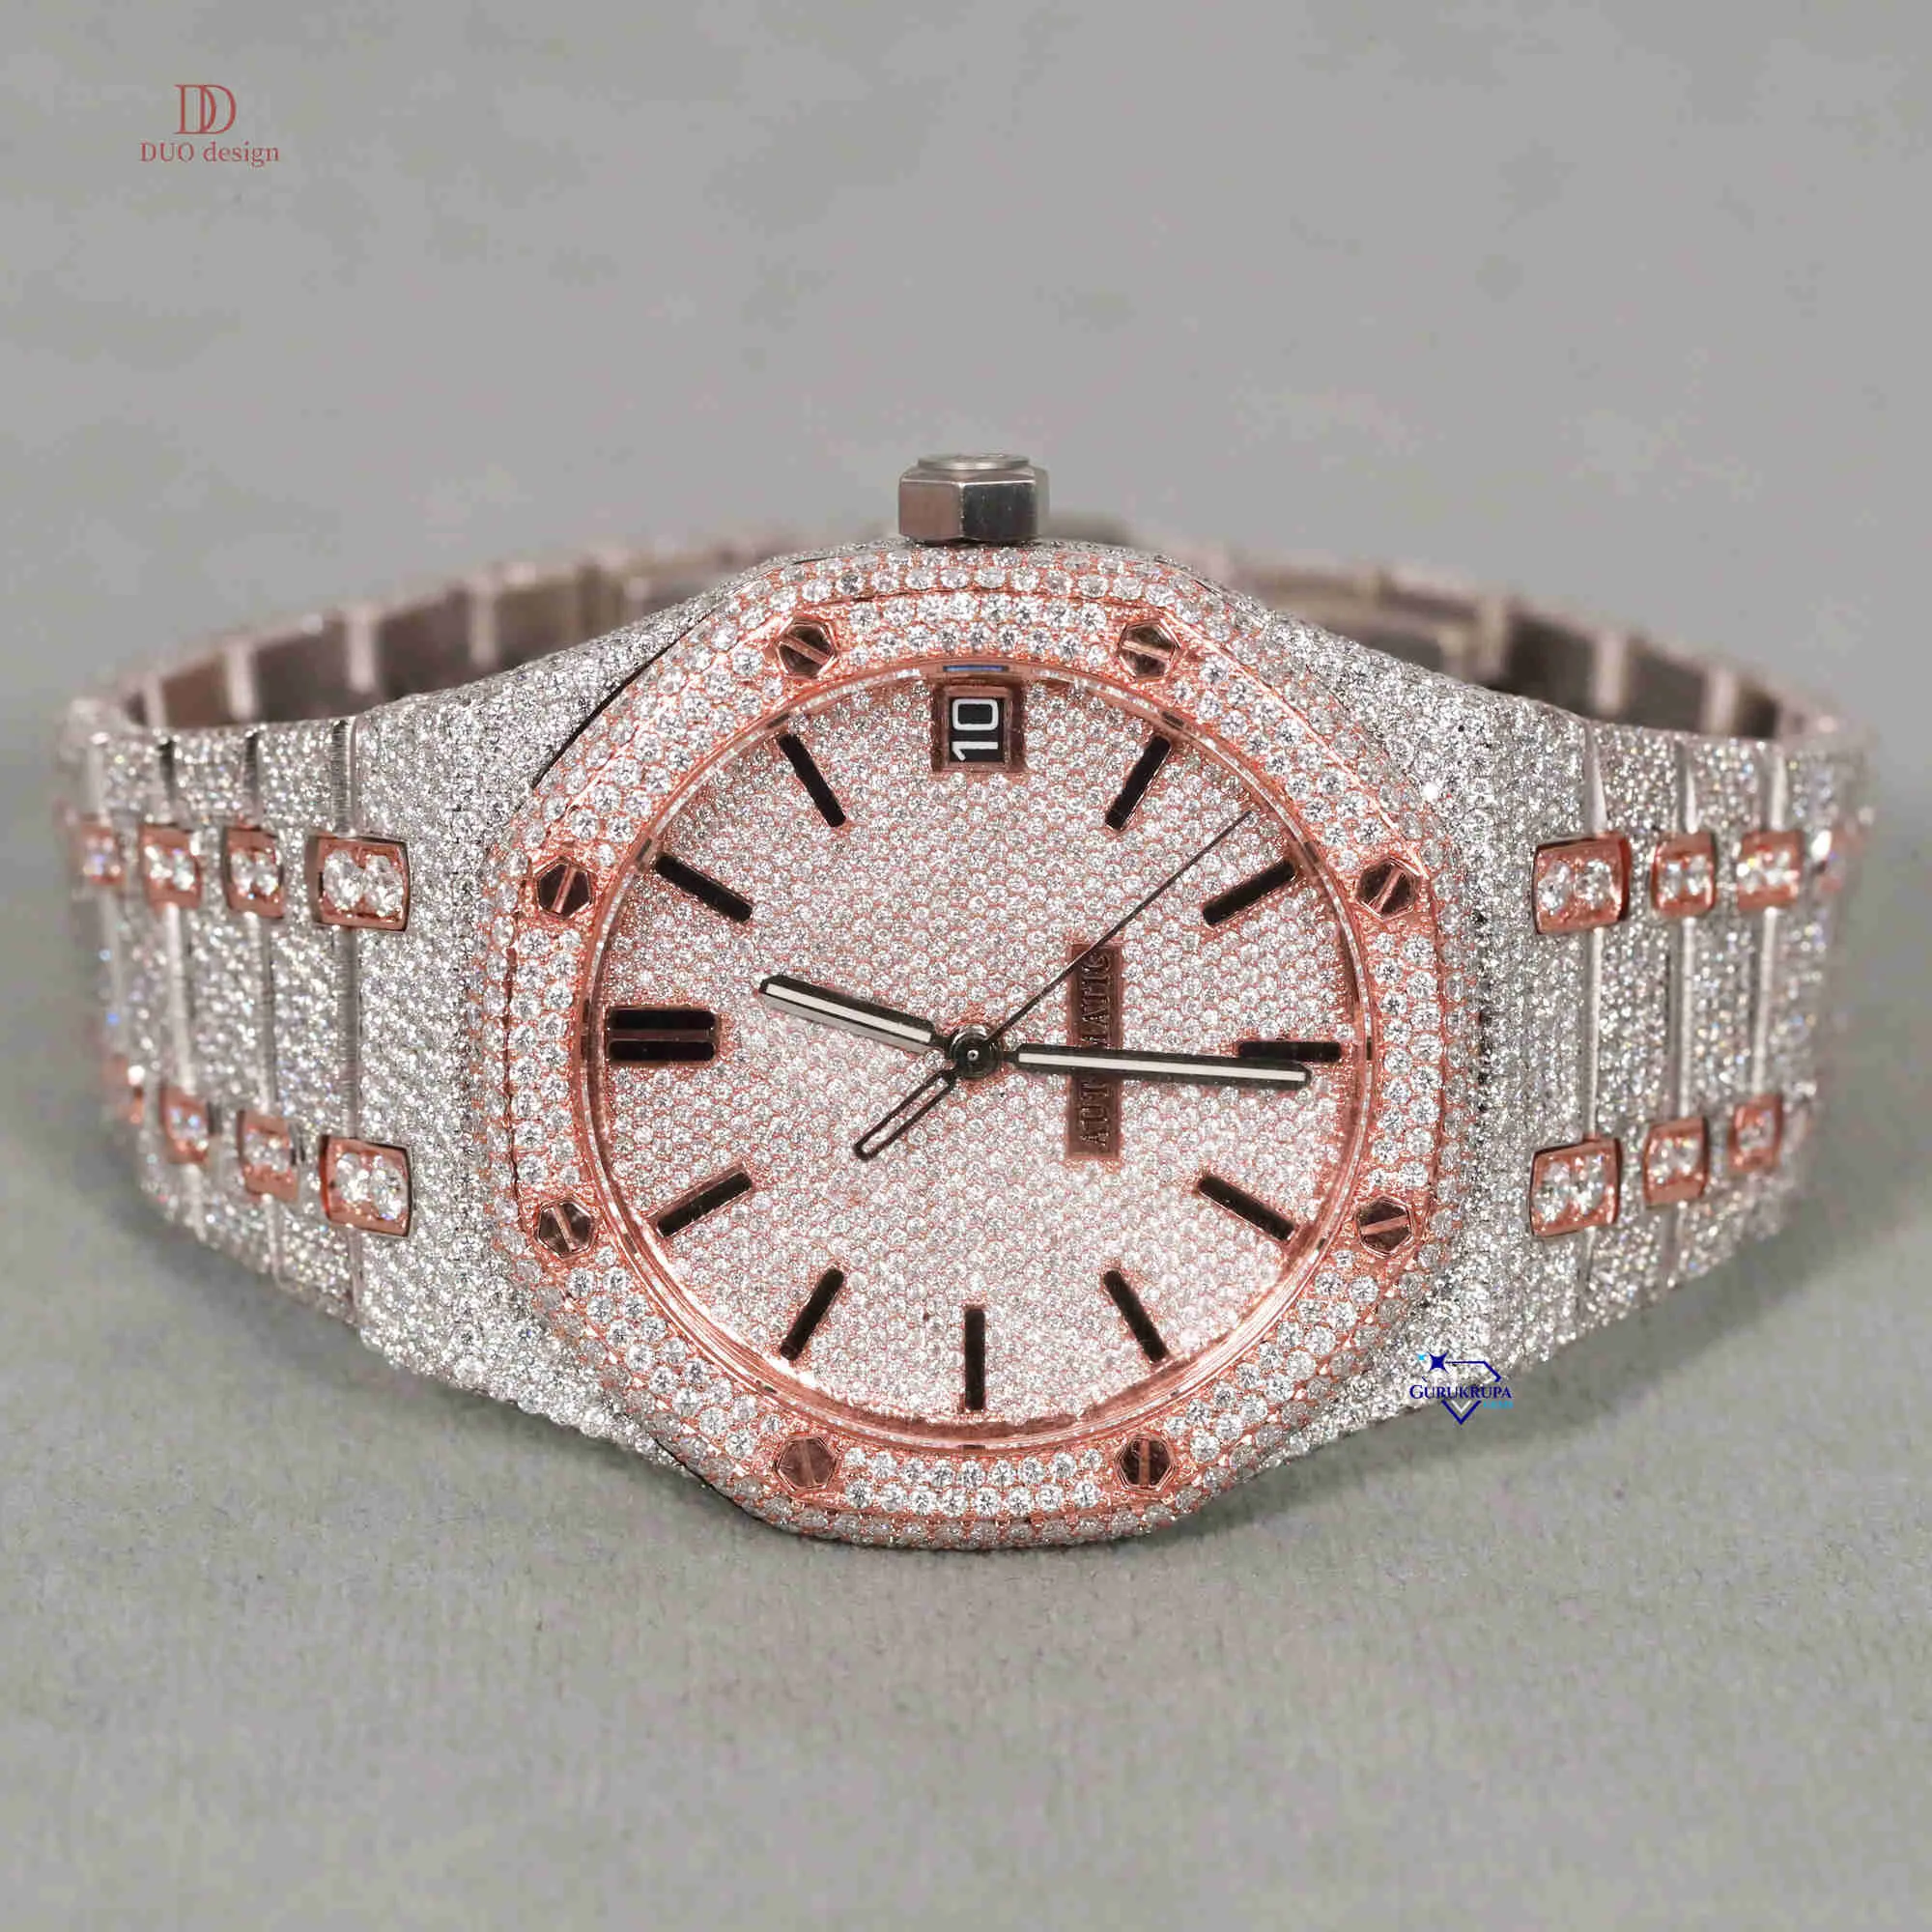 この時計のダイヤモンドテストとフレームに合格するモイサナイトダイヤモンドで作られた豪華な時計は高品質です